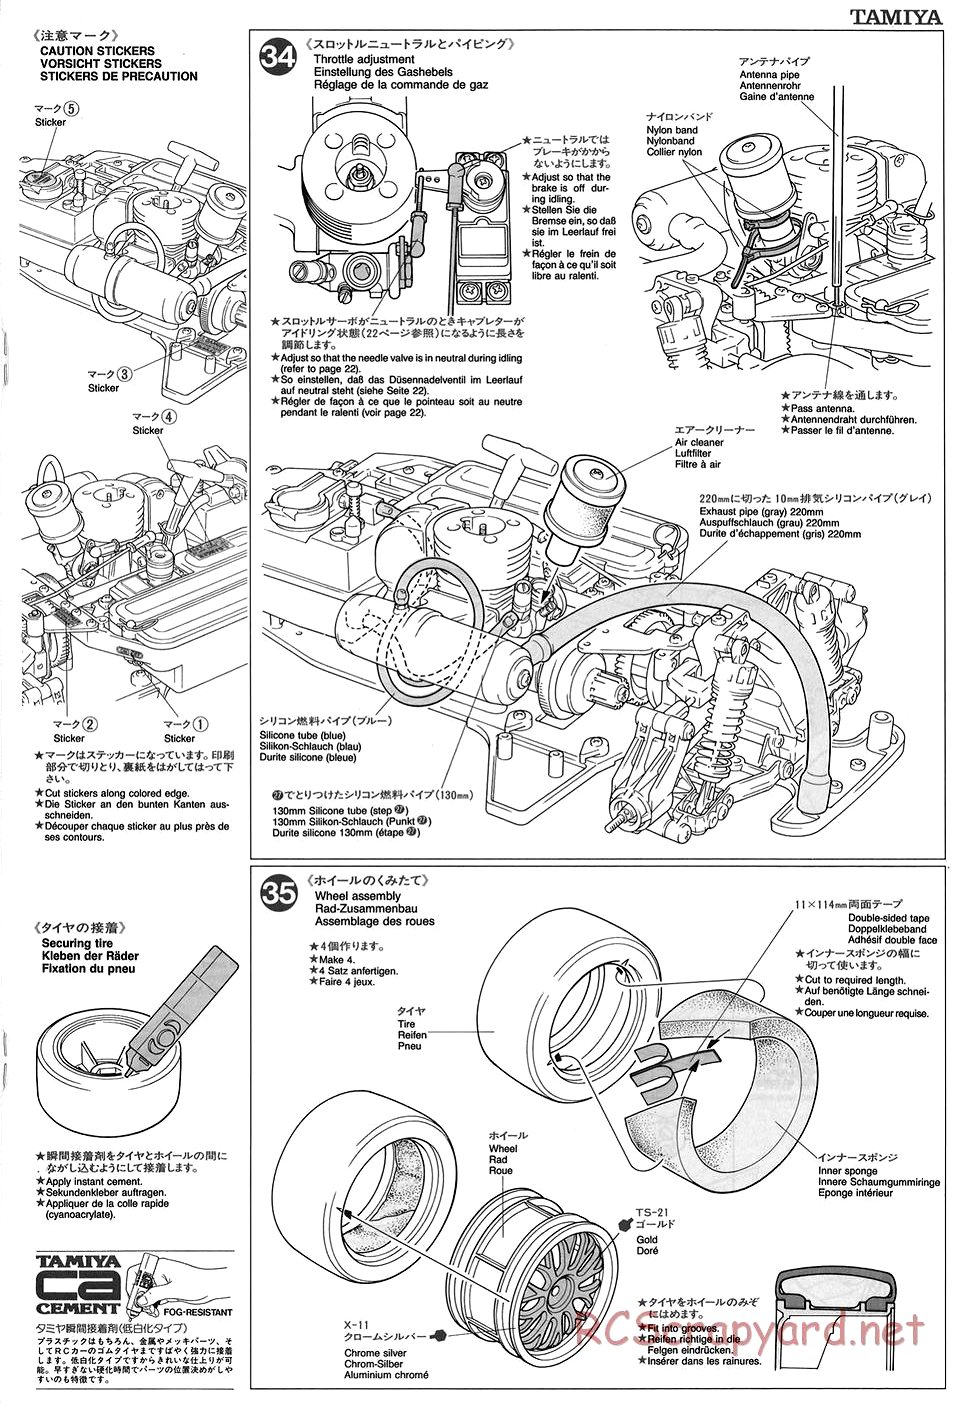 Tamiya - TGX Mk.1 Chassis - Manual - Page 17